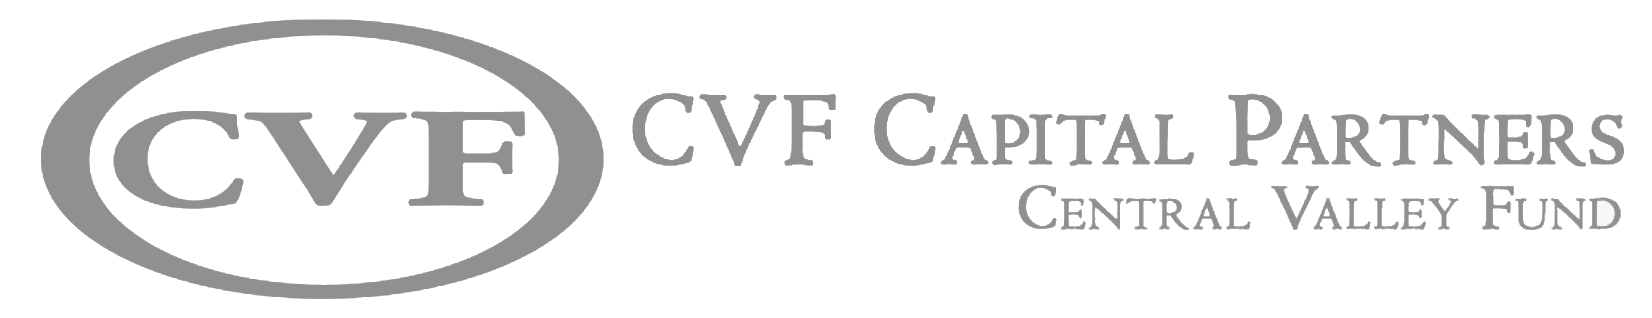 cvf-24